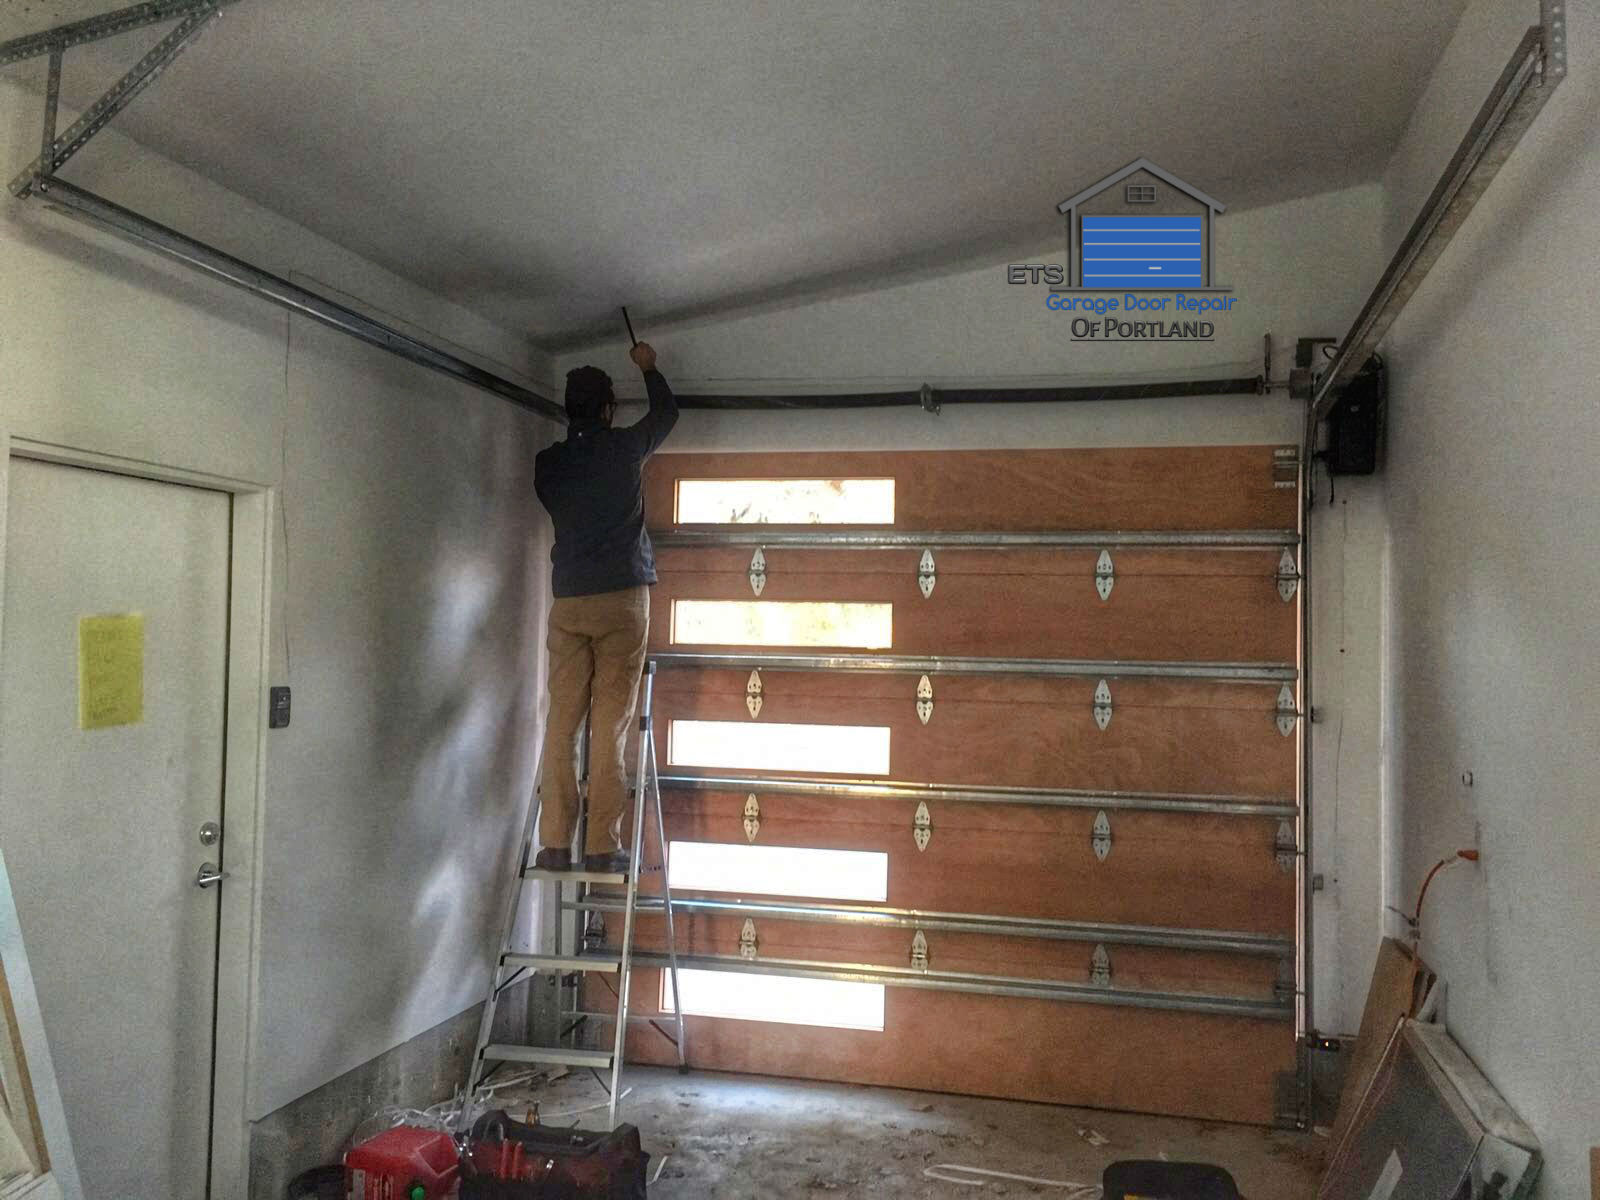 ETS Garage Door Repair Of Tigard - Garage Door Repair & Installation Services17